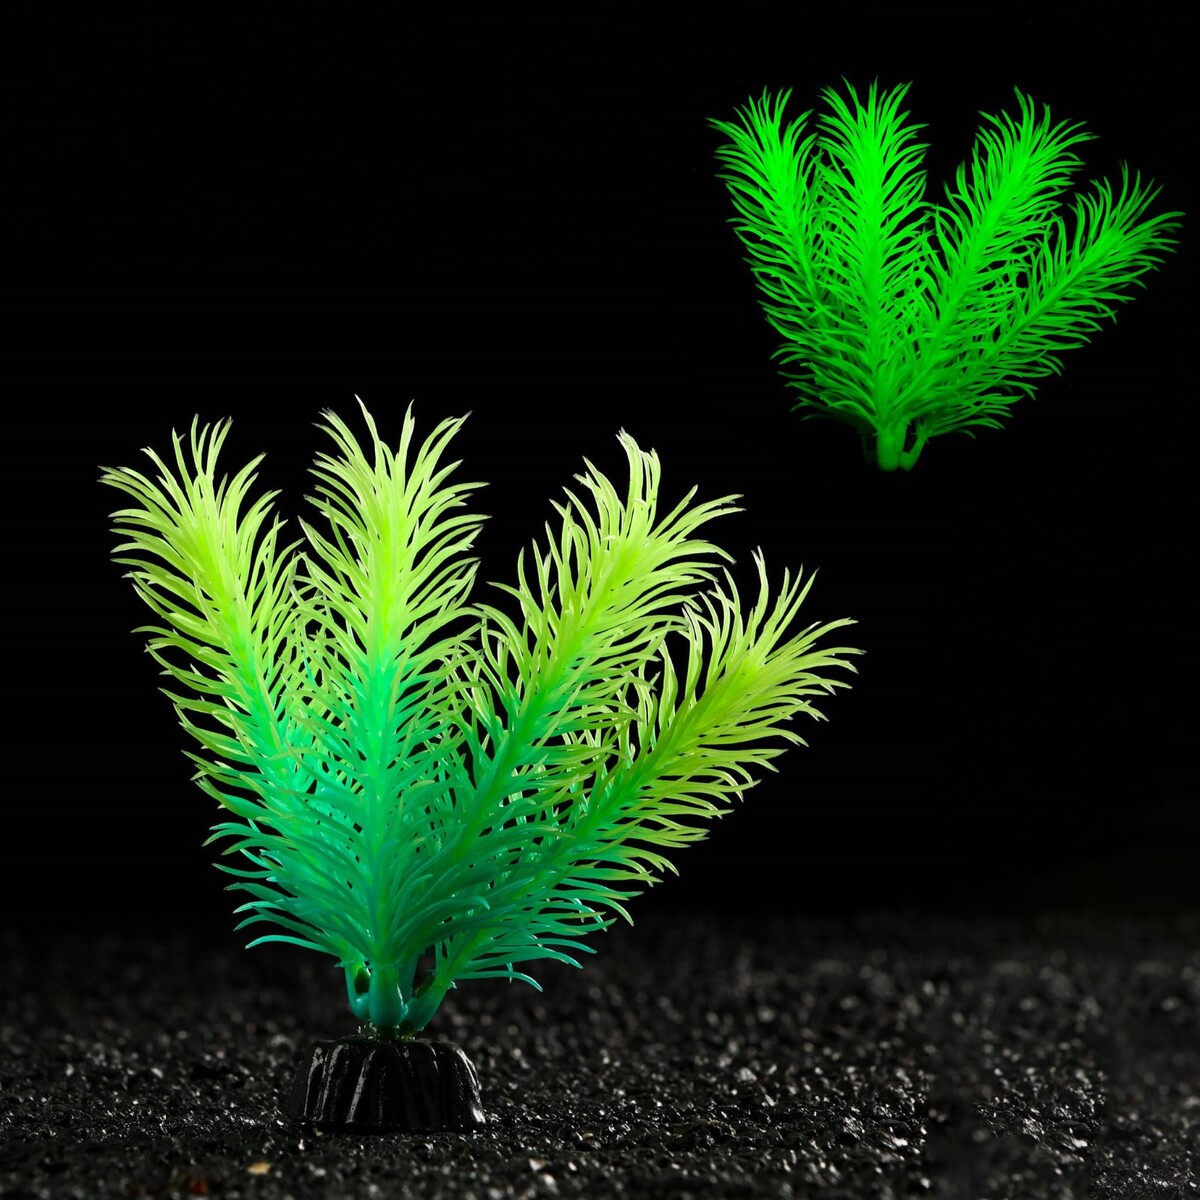 Растение искусственное аквариумное, светящееся, 10 см, зеленое растение силиконовое аквариумное светящееся в темноте 8 х 15 см зеленое